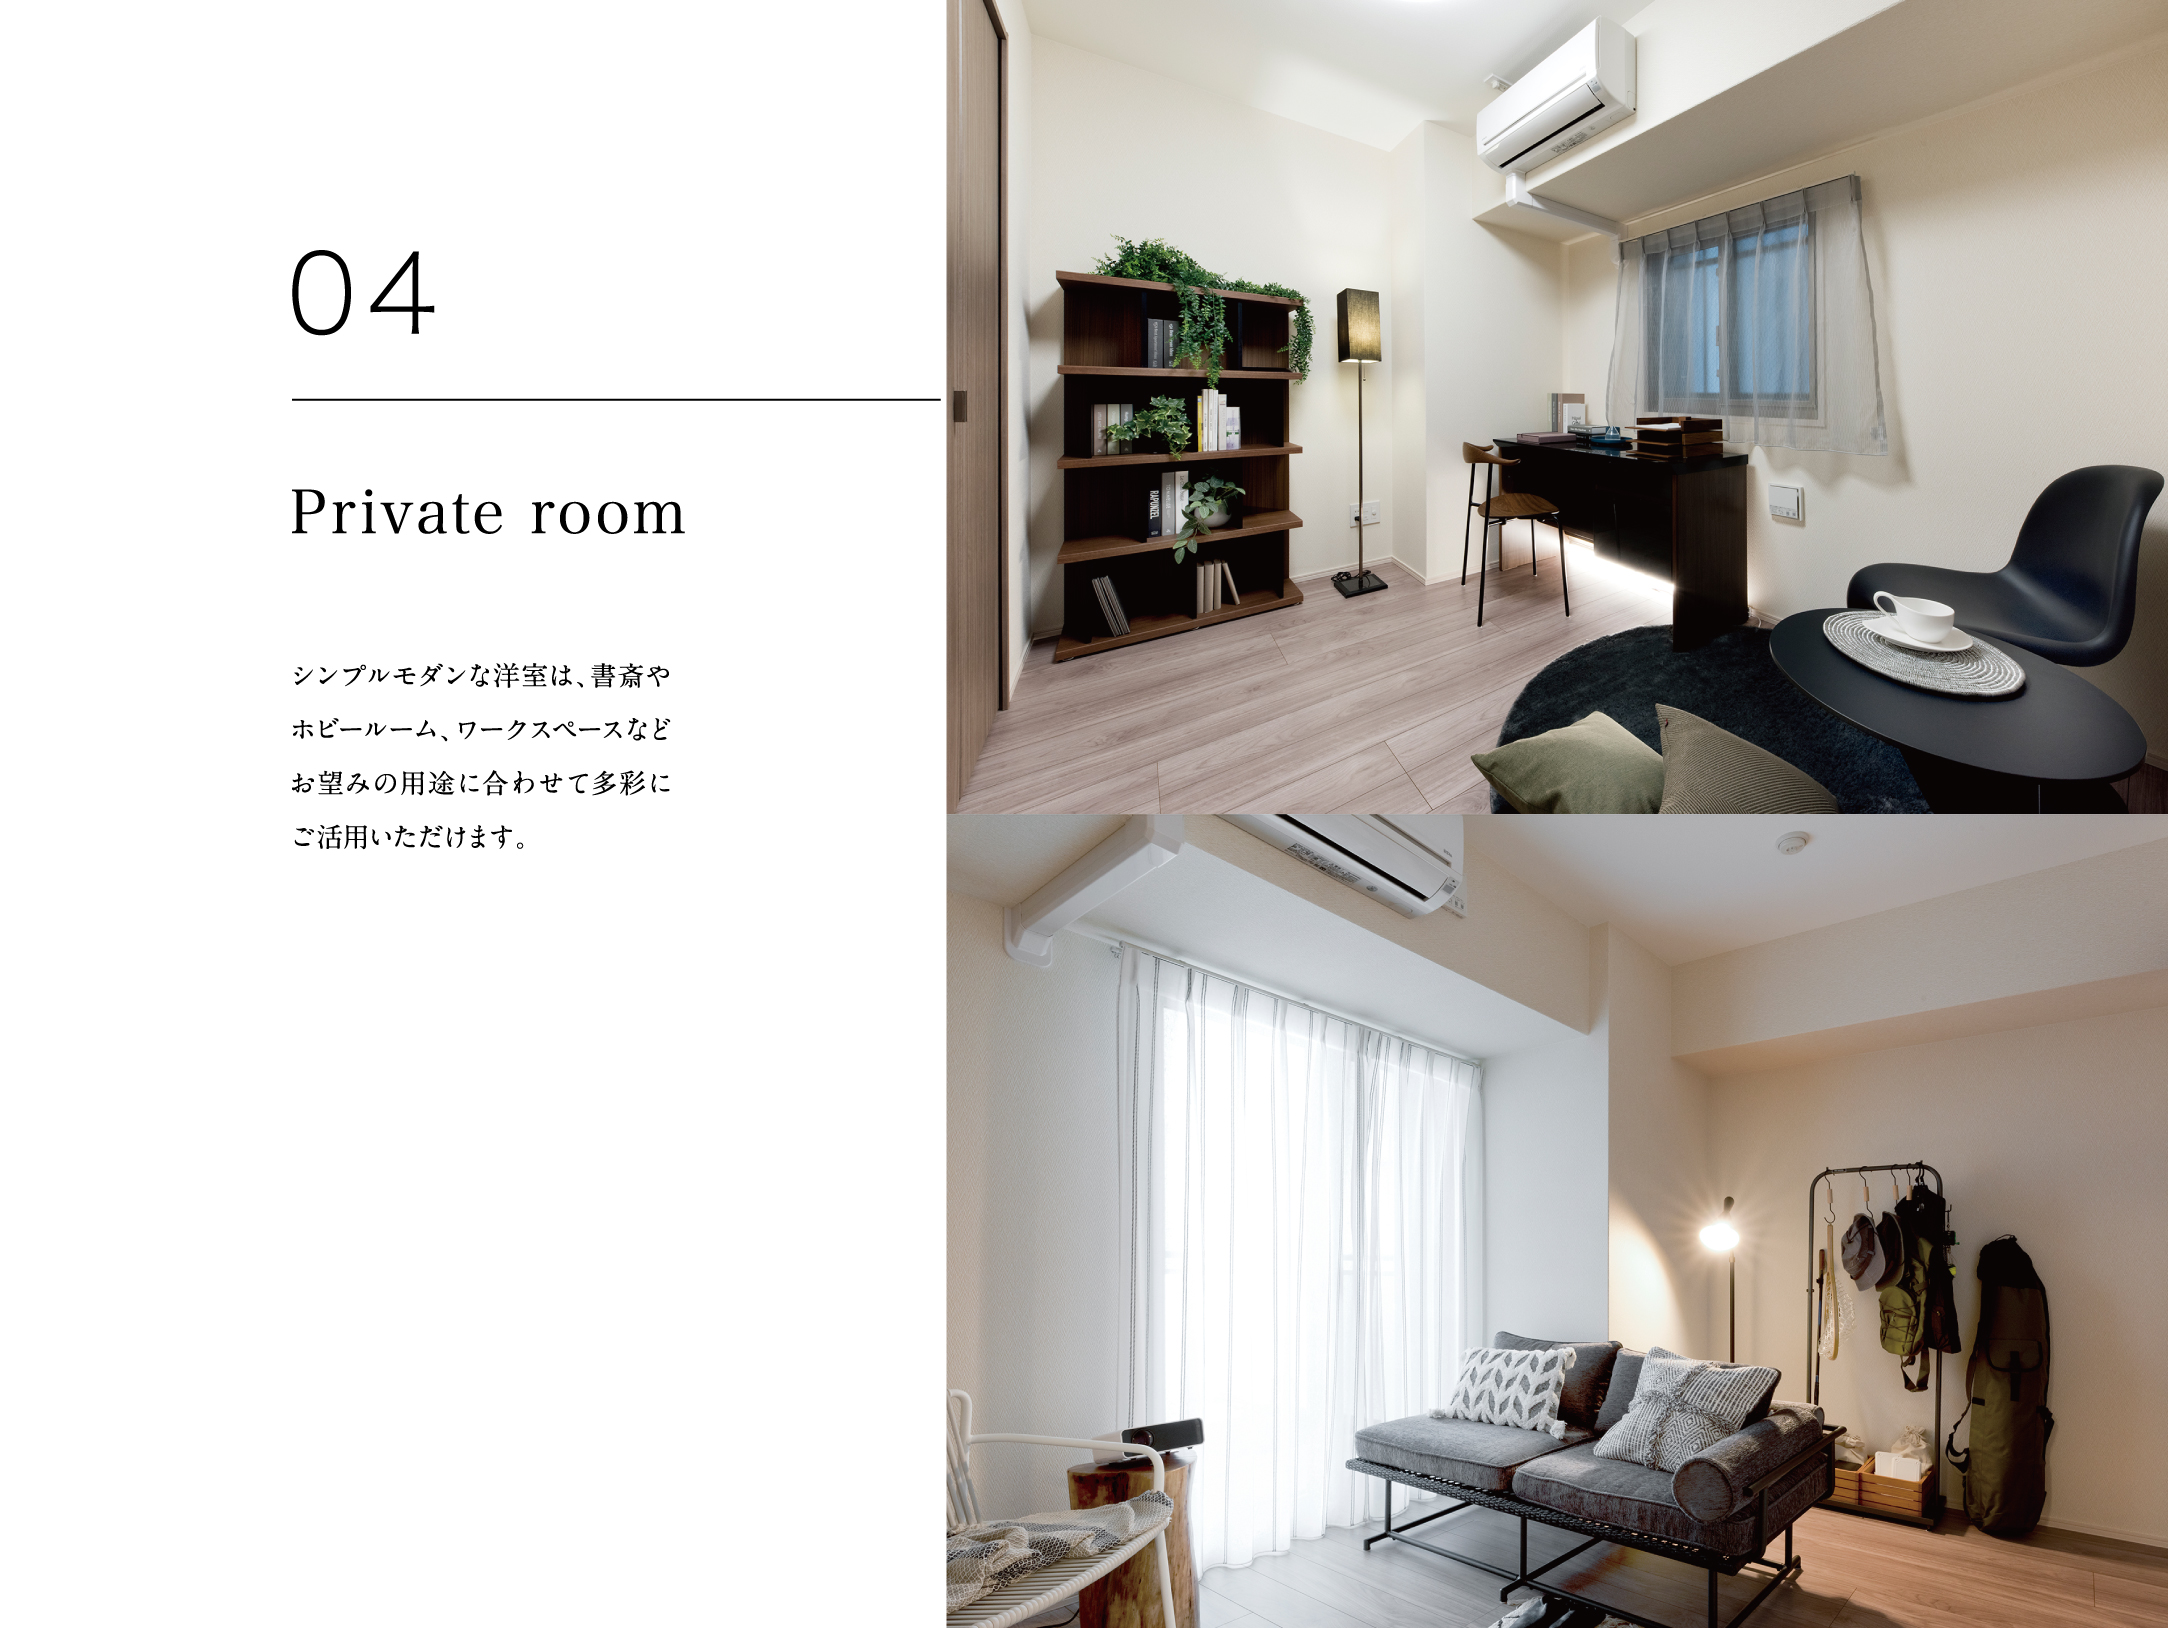 04 Private room